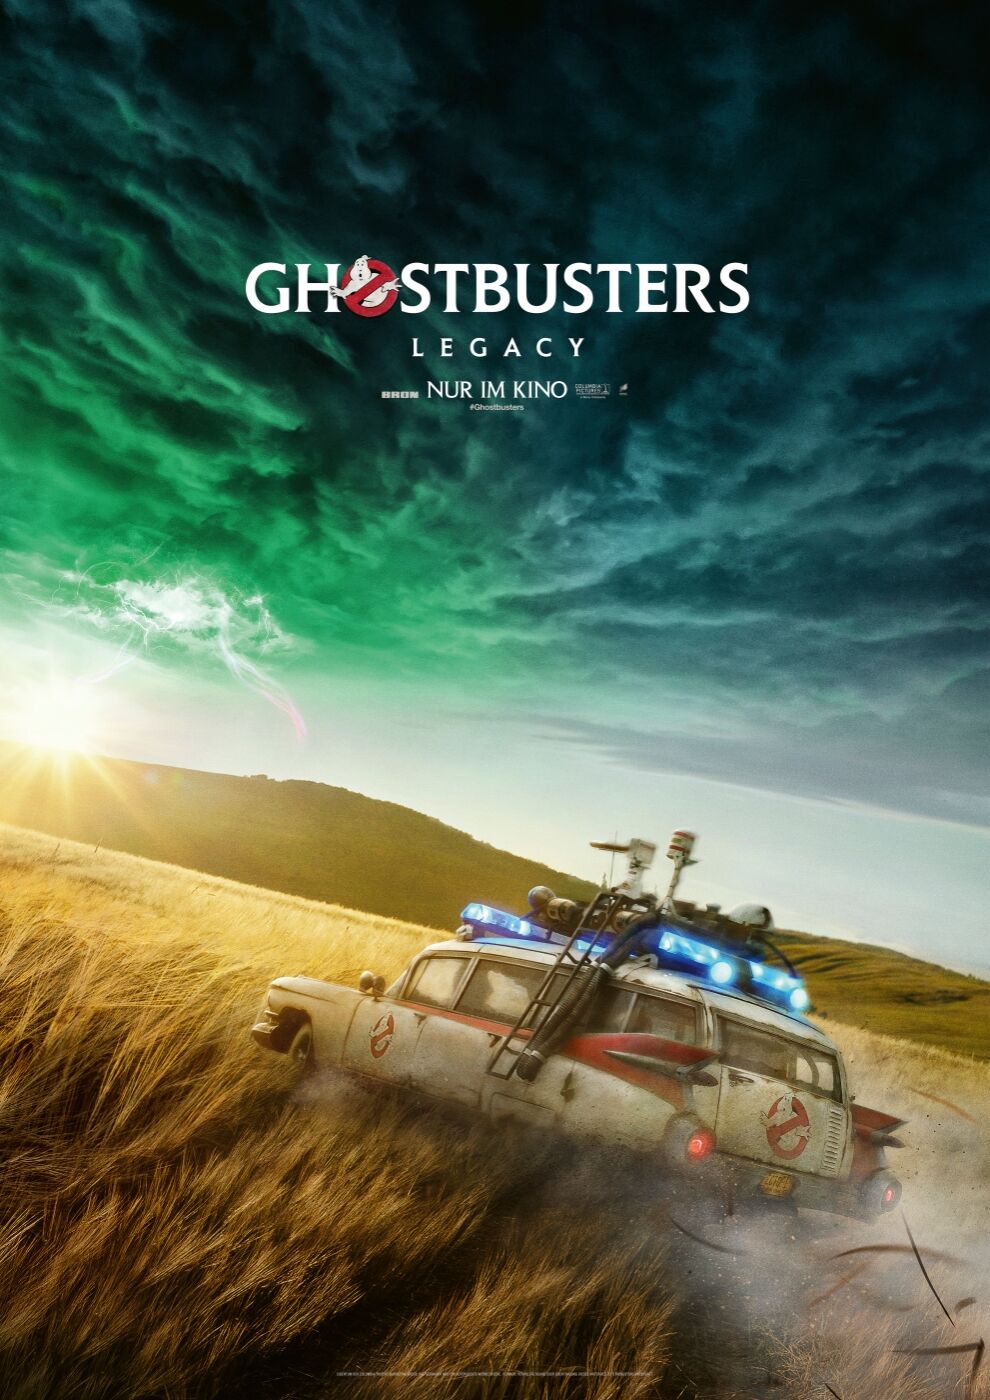 Auf dem Plakat von Ghostbusters: Legacy ist der Ecto 1 zu sehen, wie ihr über ein Feld fährt